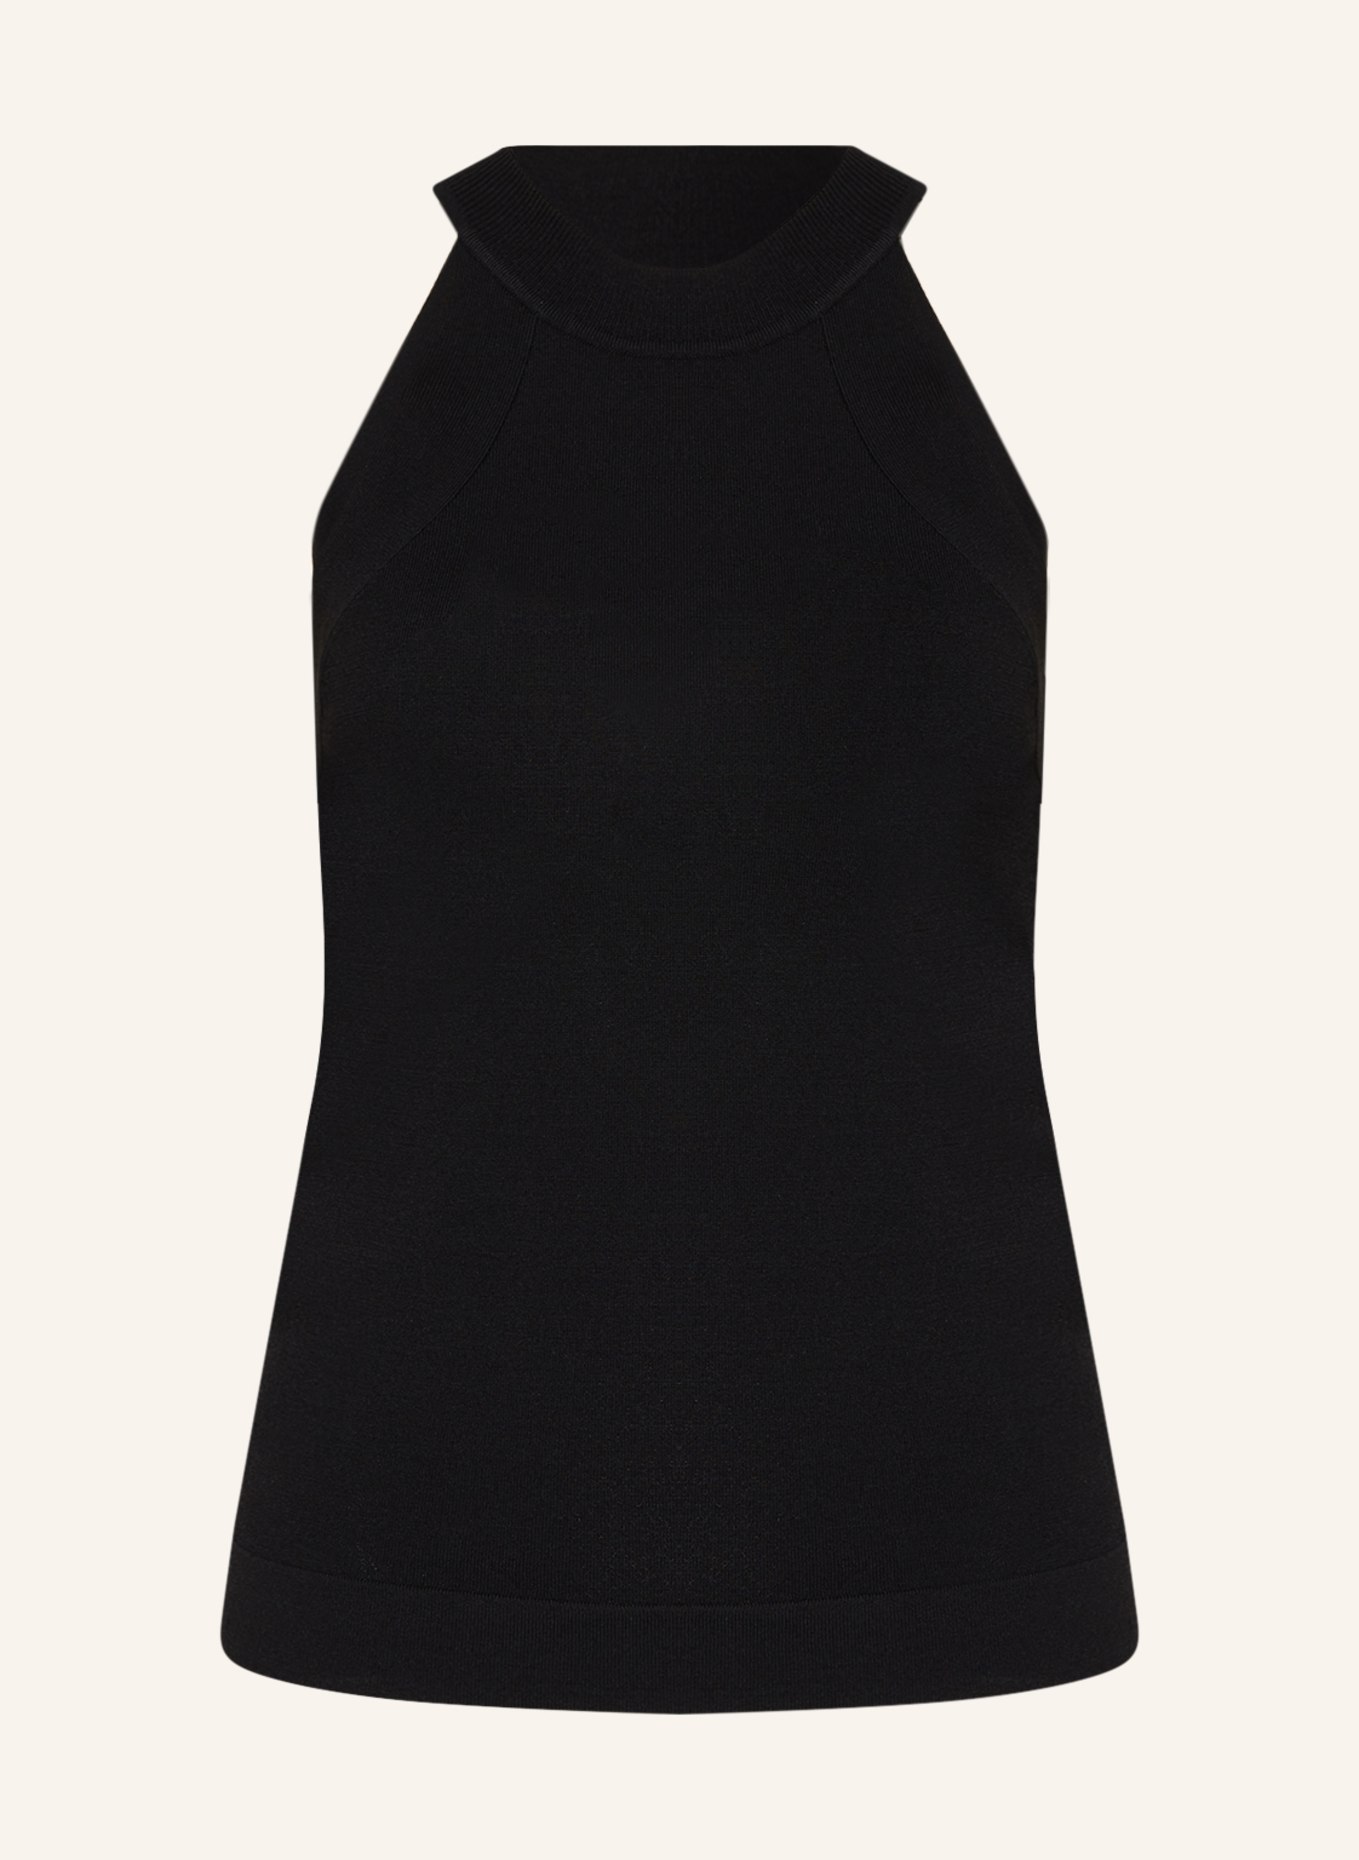 summum woman Knit top, Color: BLACK (Image 1)